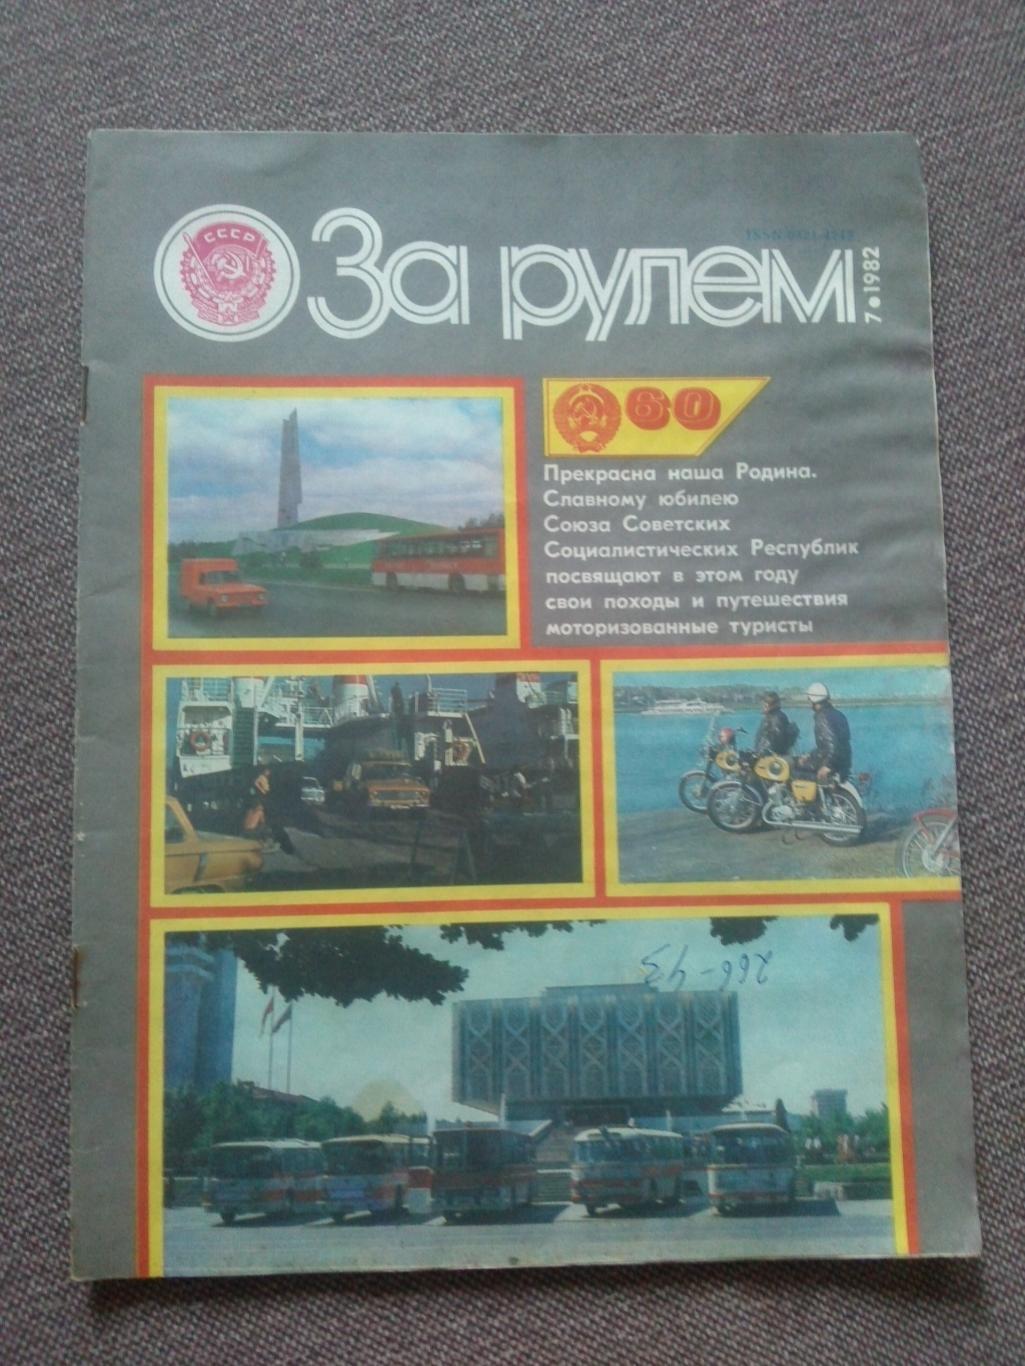 Журнал СССР :За рулем№ 7 ( июль ) 1982 г. ( Автомобиль , транспорт )